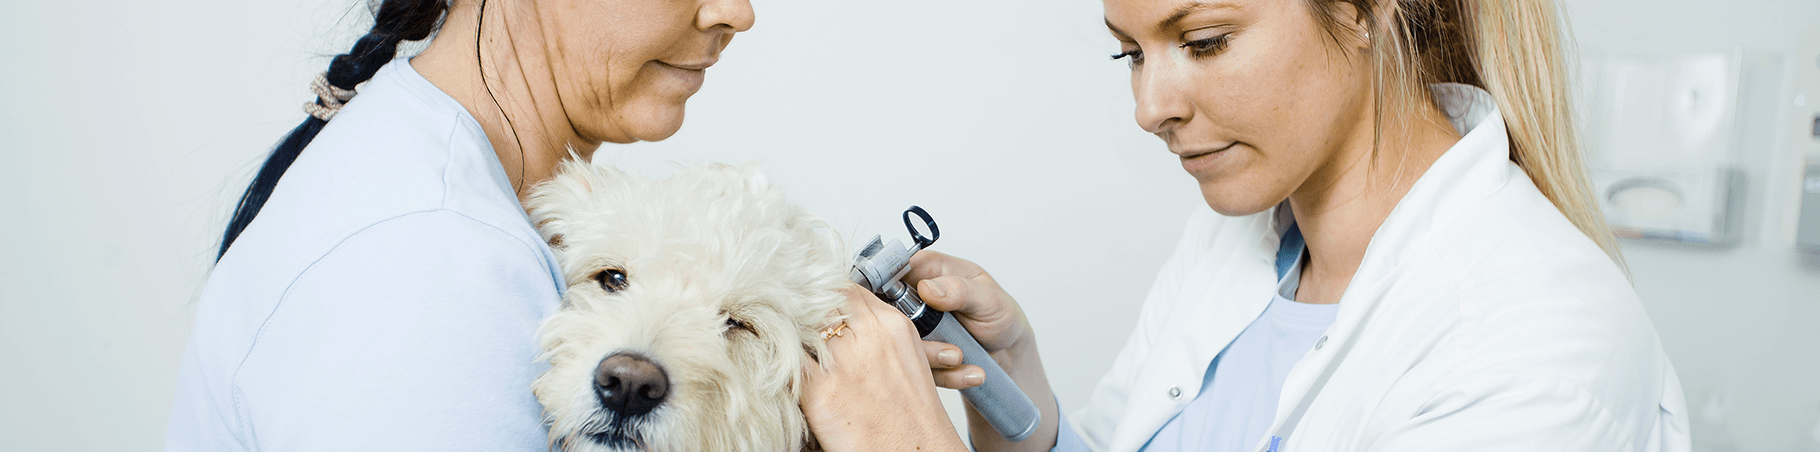 Tandresning af hund hos dyrlægen i Espergærde